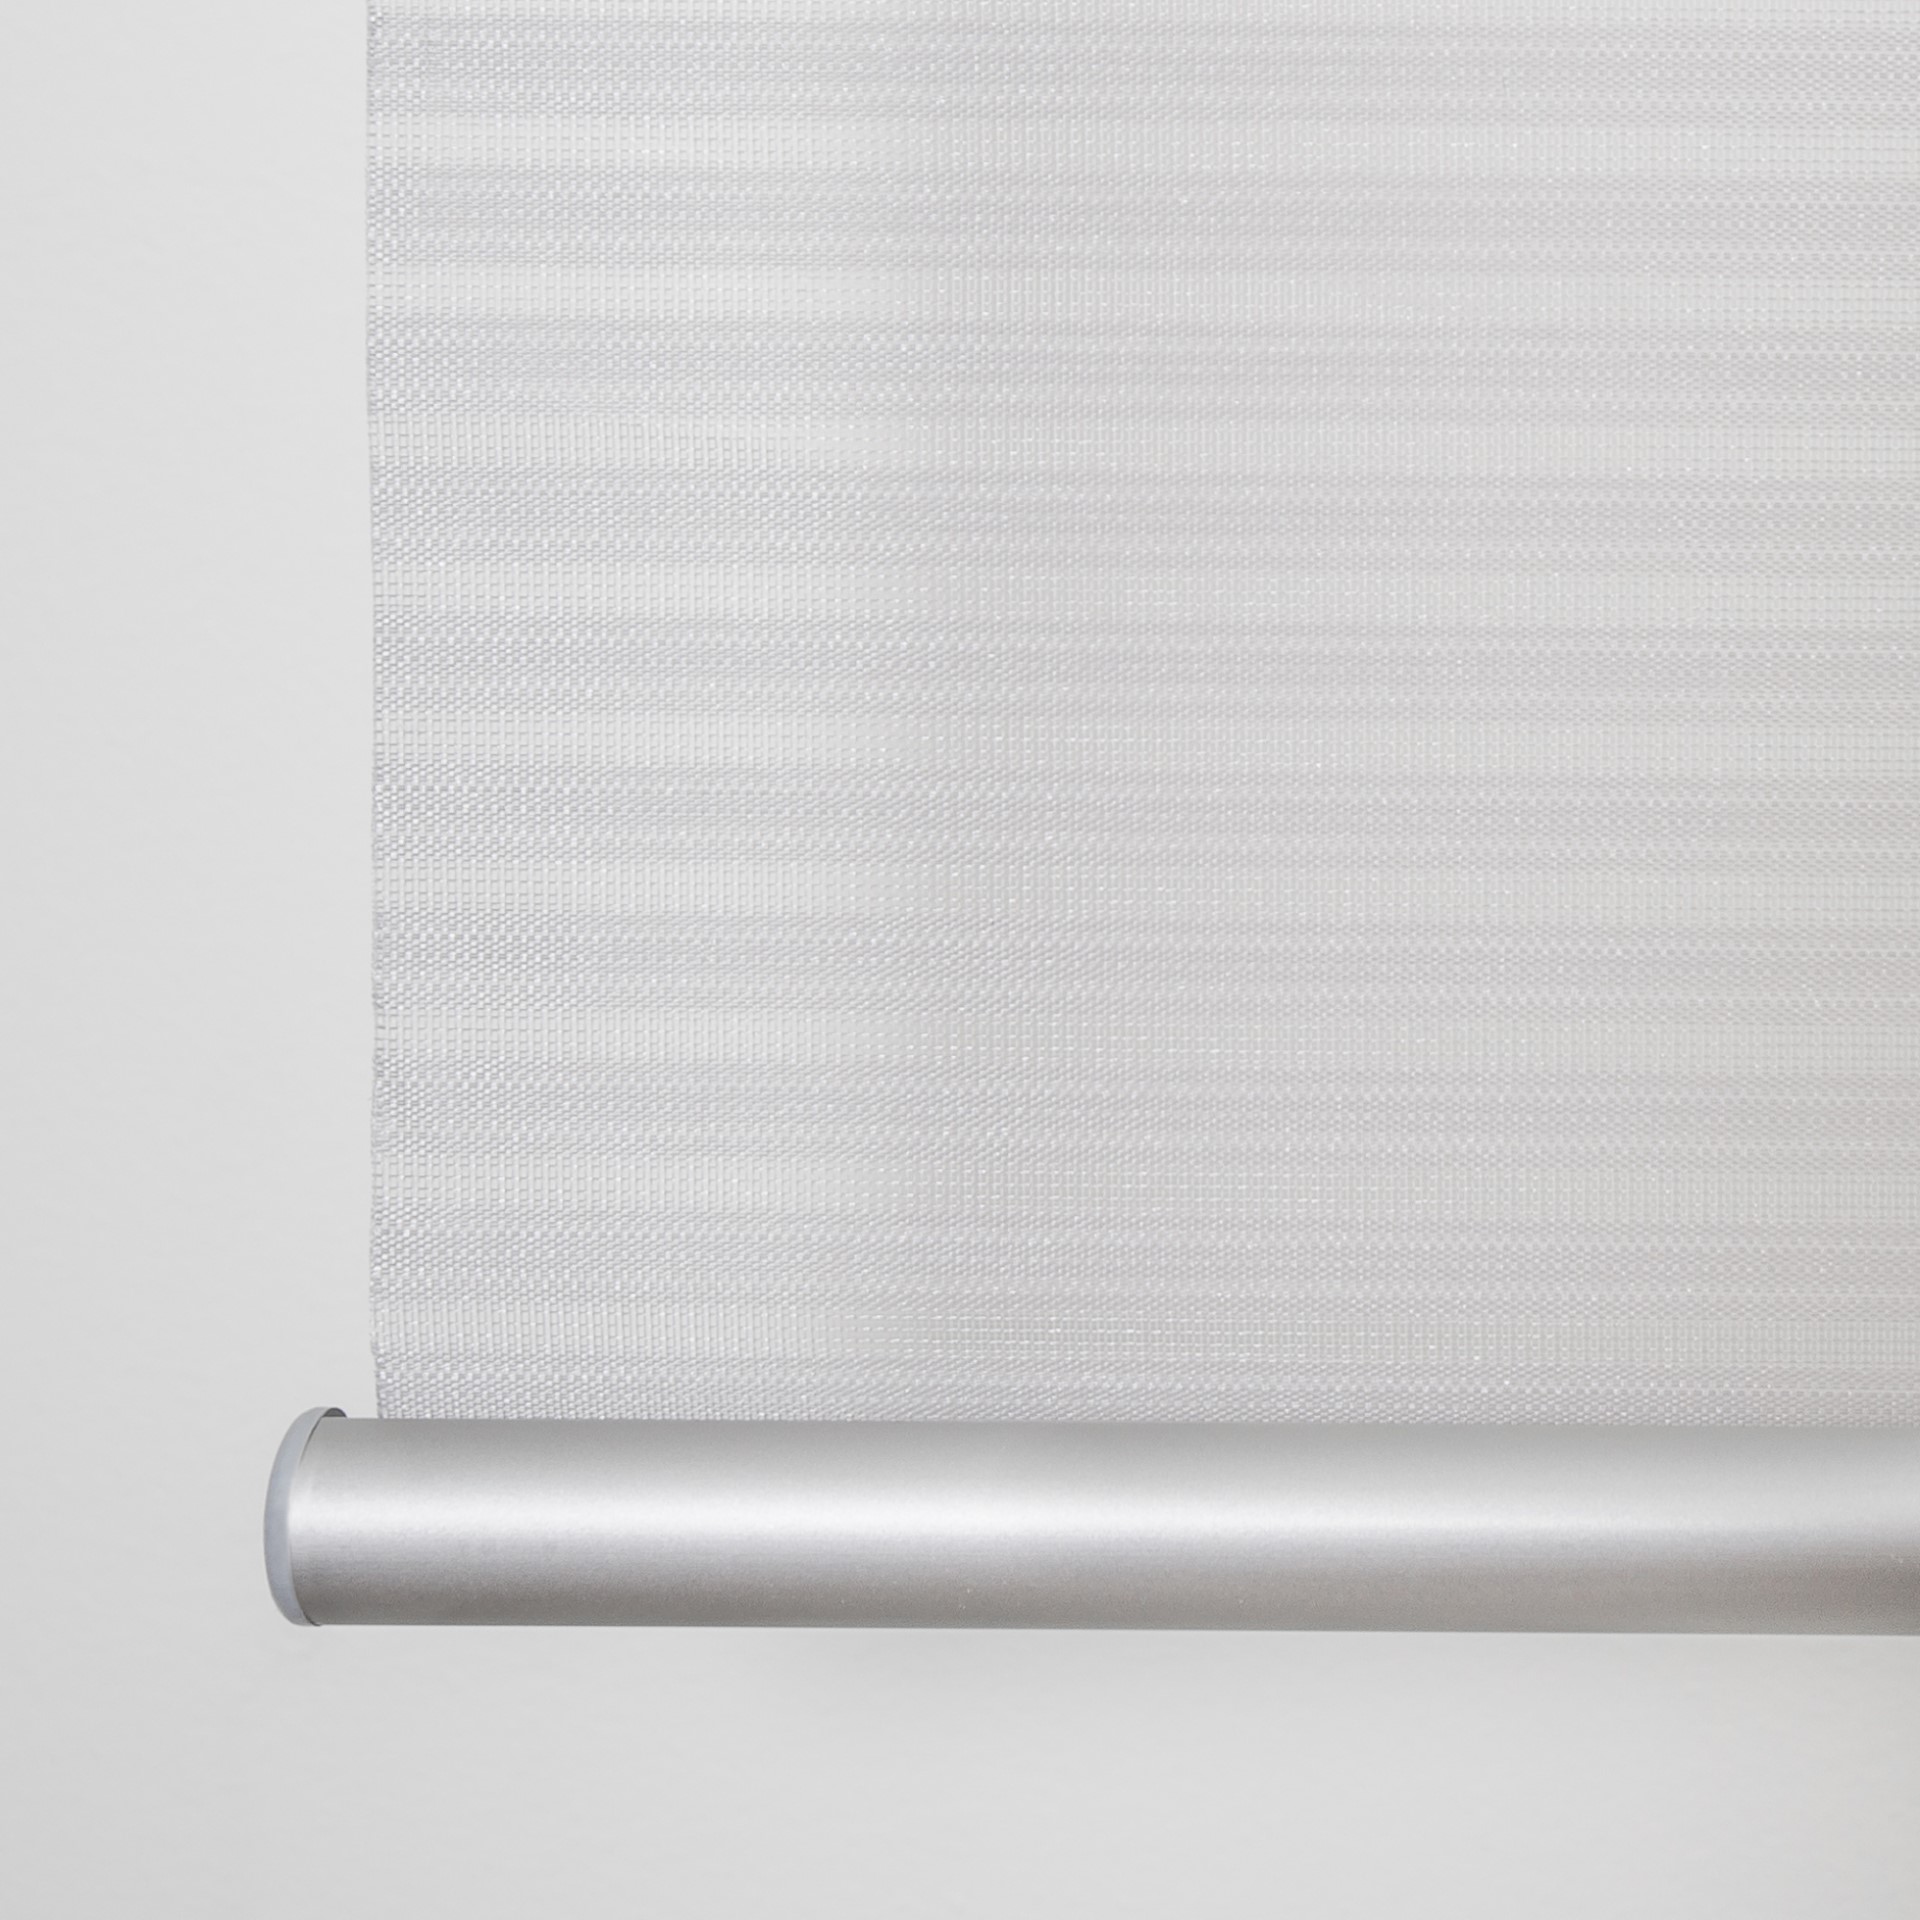 Cebra Translucent Roller Blind White Counterweight Detail